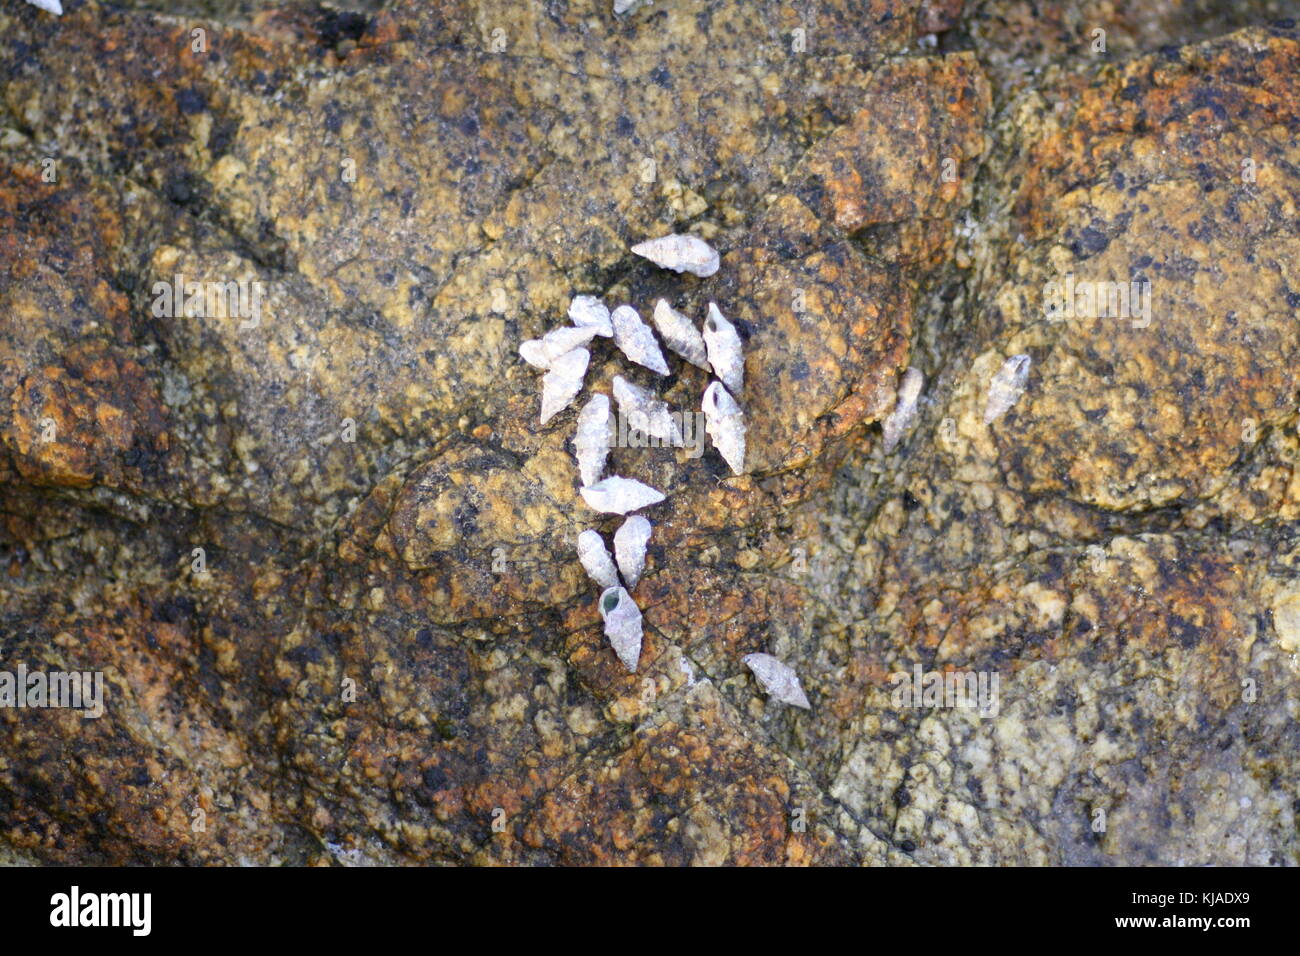 Varios blanco tipo cerith conchas marinas que viven sobre una roca en el mar. Foto de stock